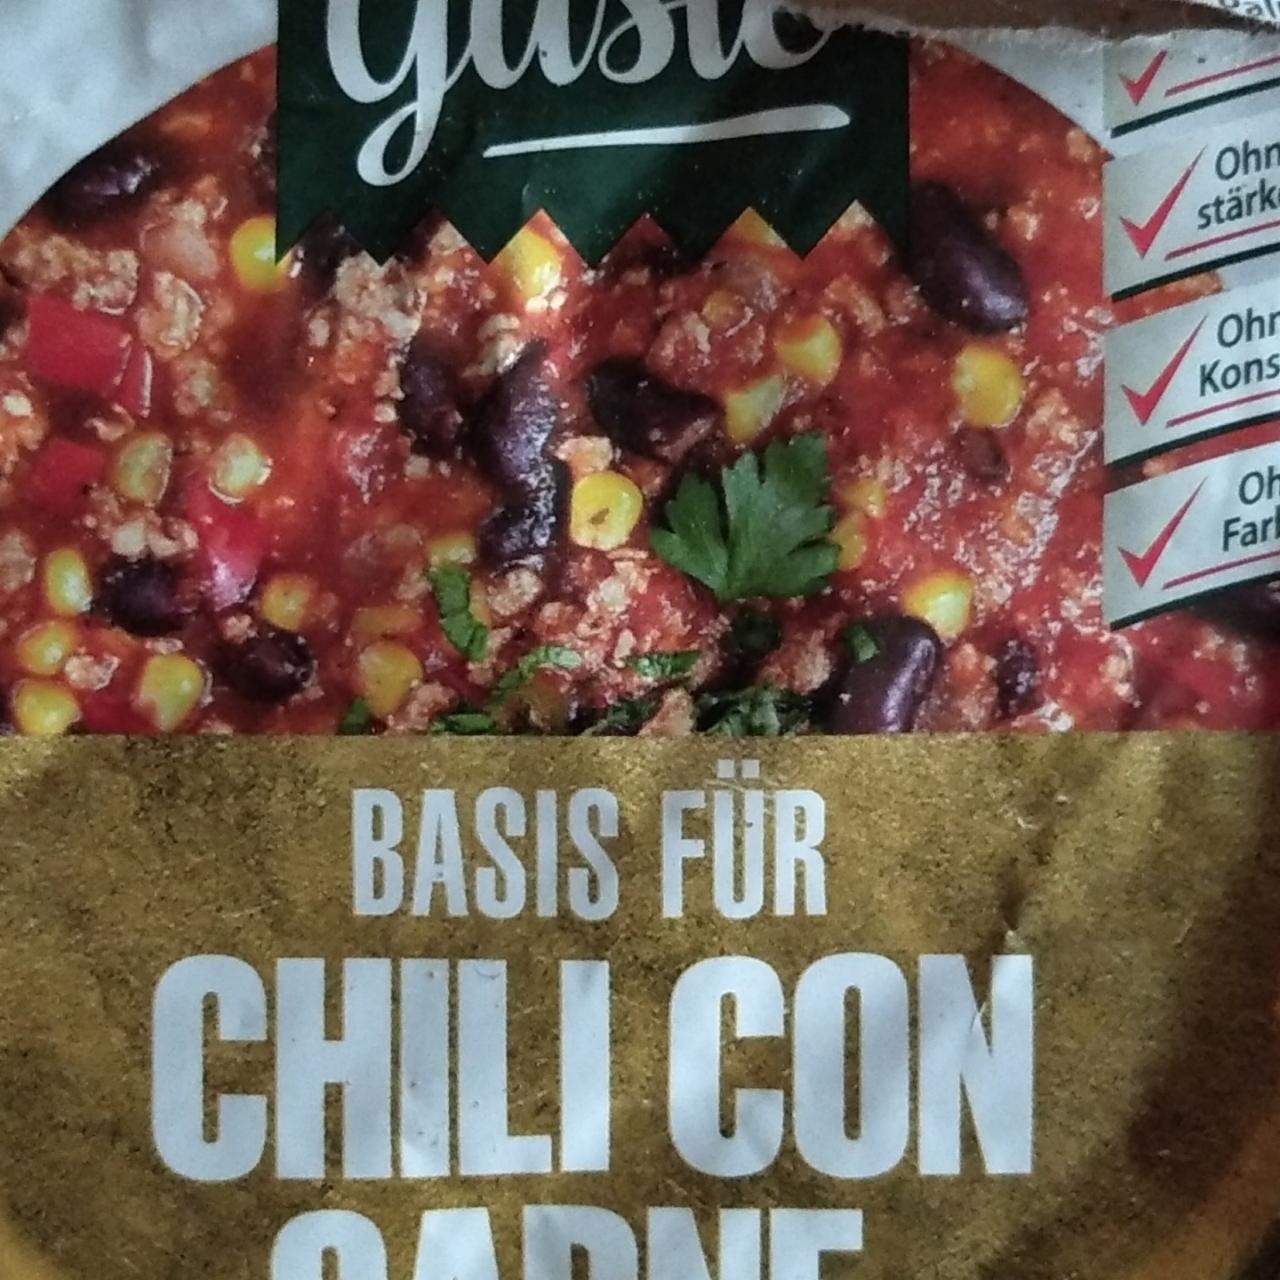 Fotografie - Basis für Chili con carne Le Gusto